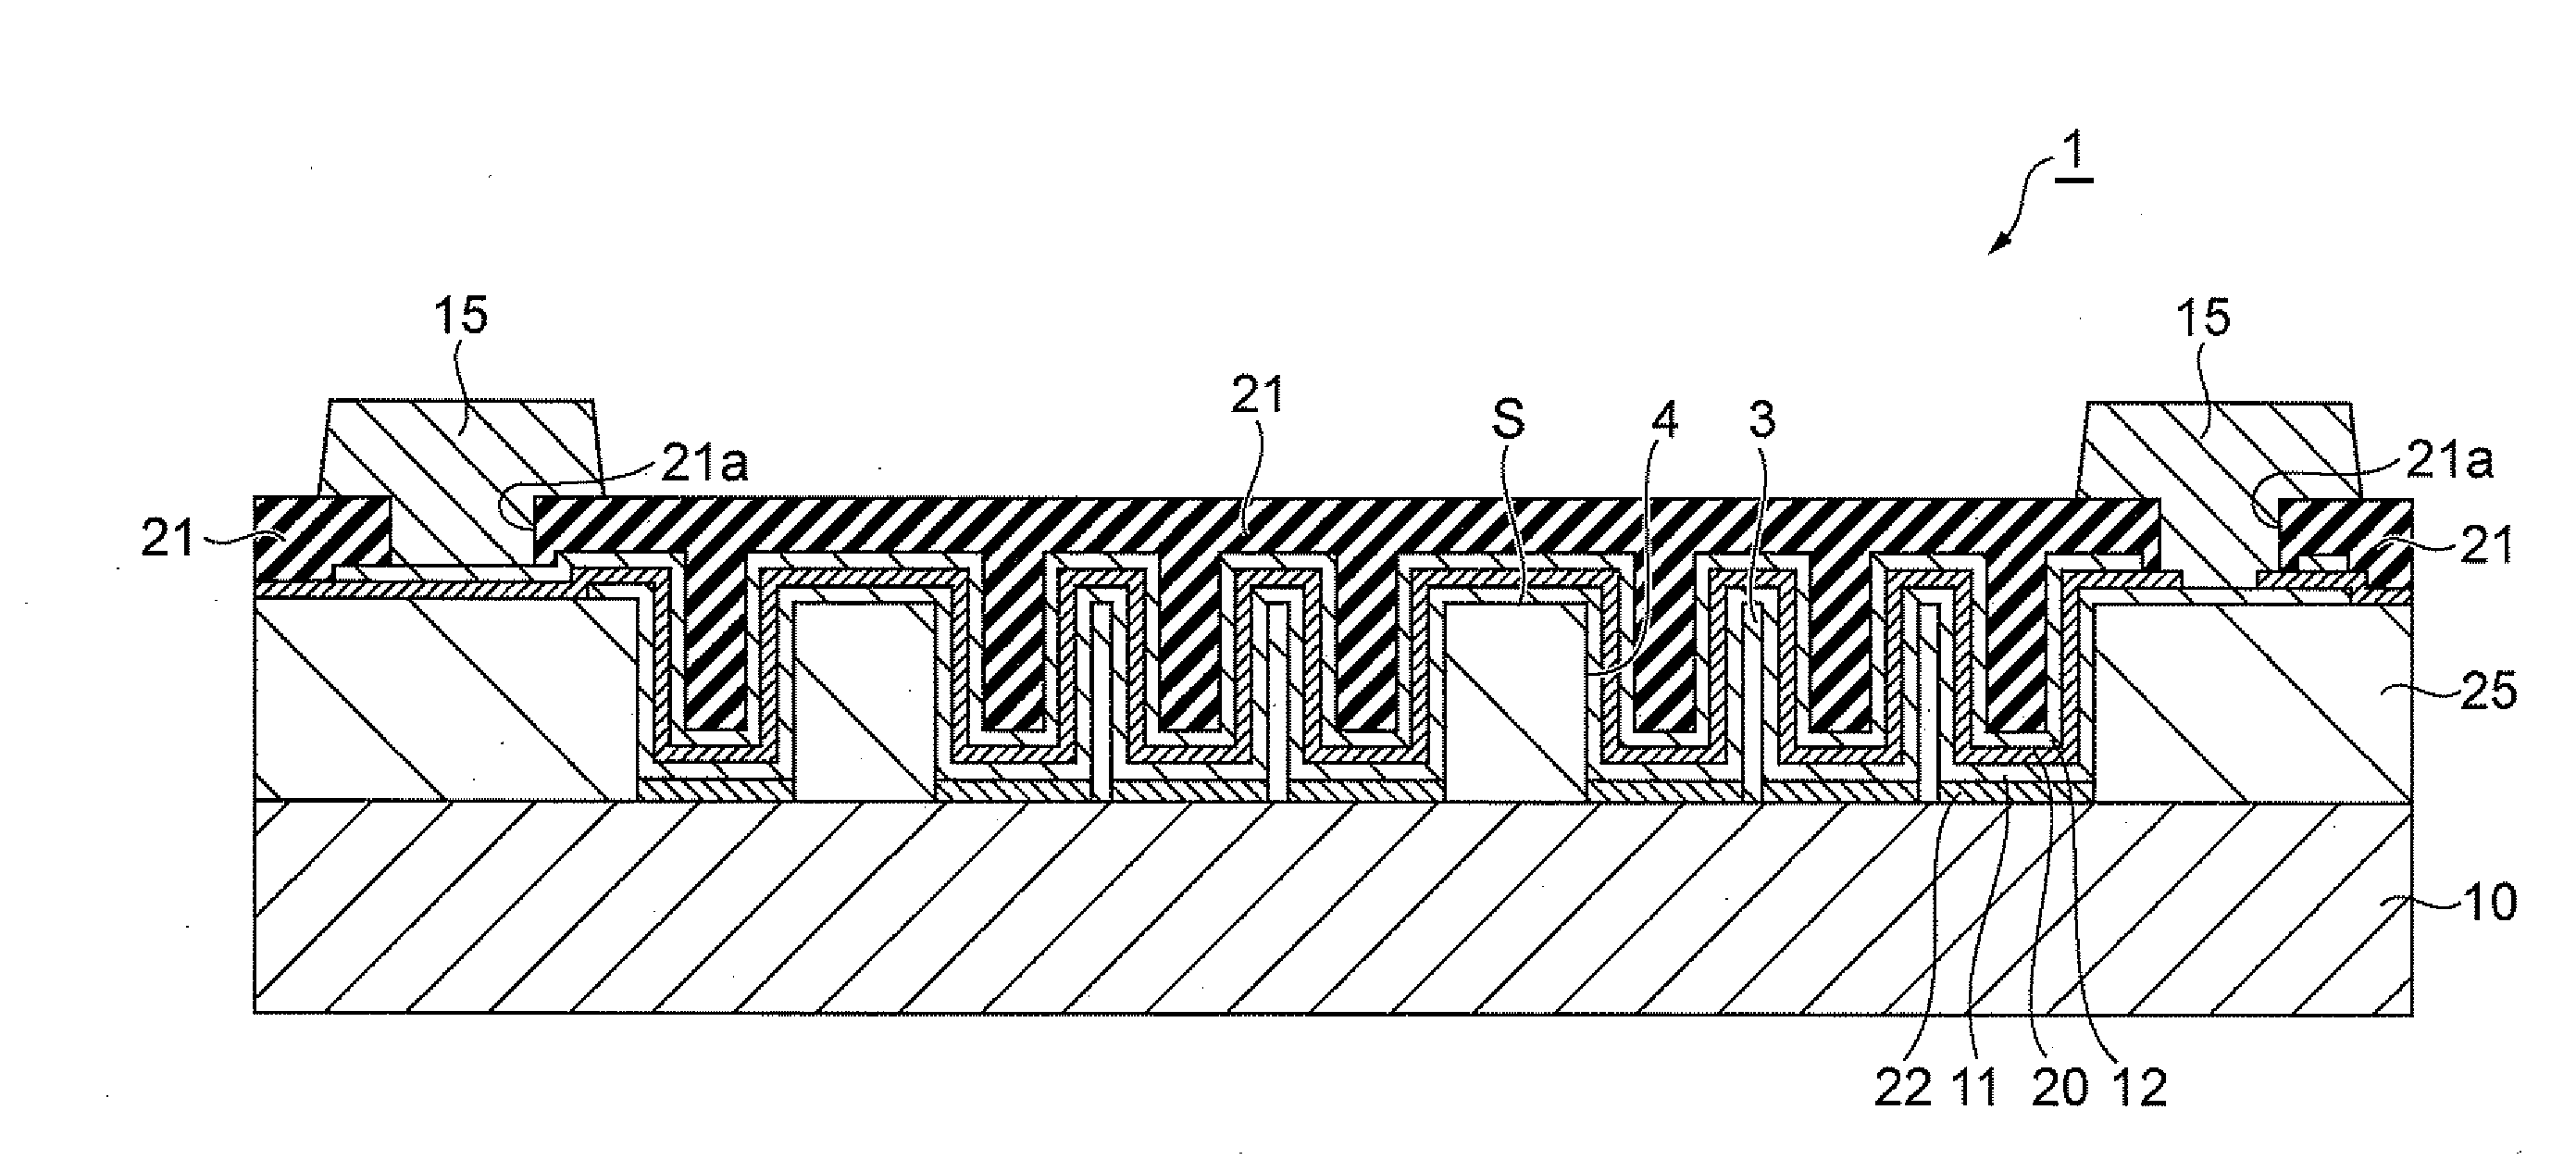 Thin-film capacitor